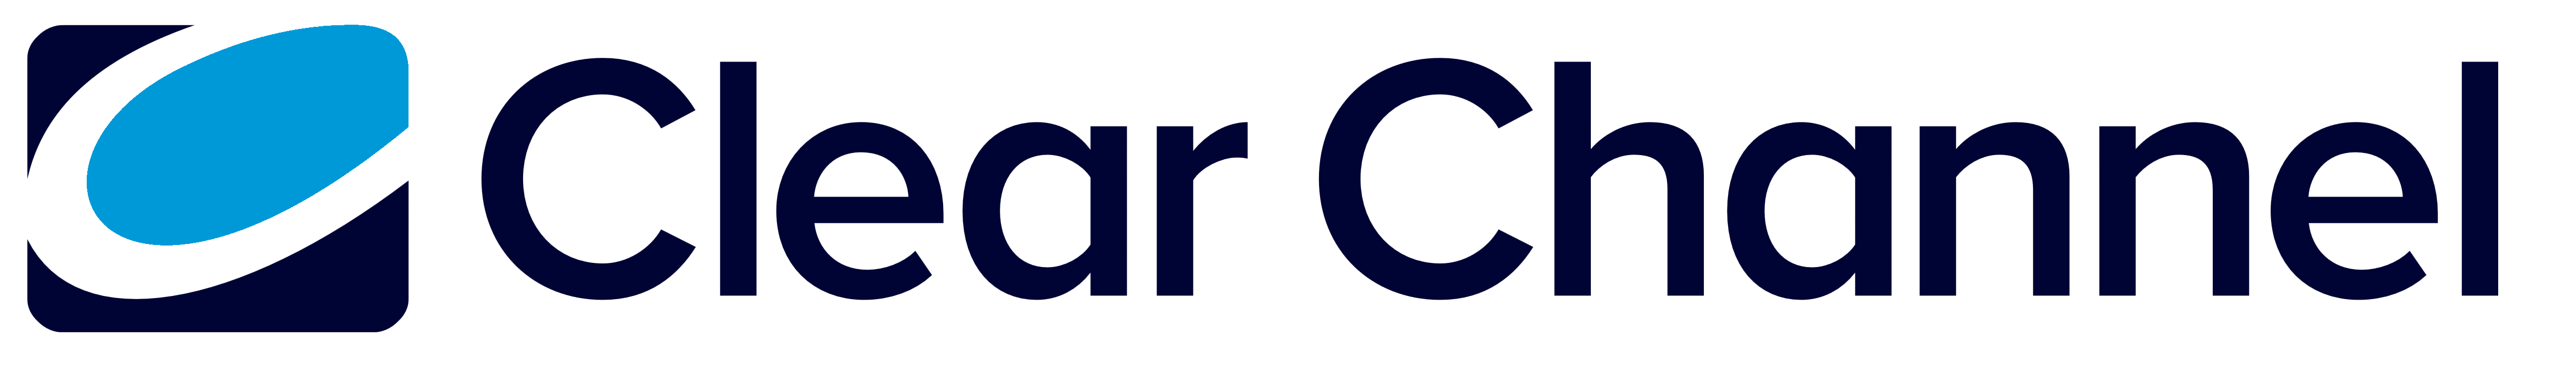 Clear Channel logo, logotype